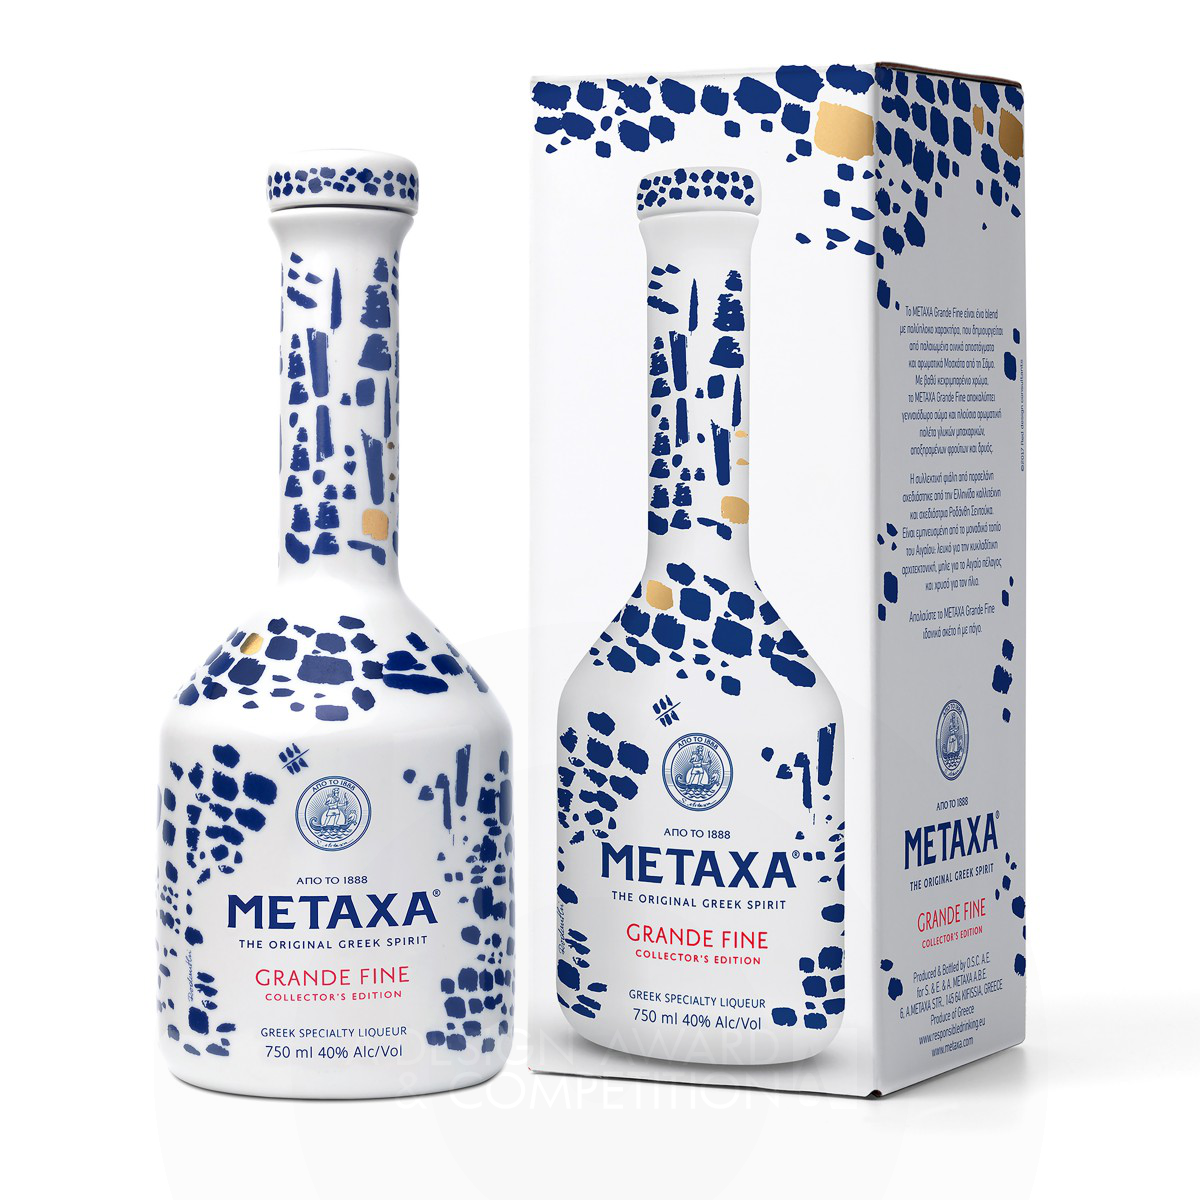 Metaxa Grande Fine Alcoholic Bottle by Red Design Consultants Rodanthi Senduka